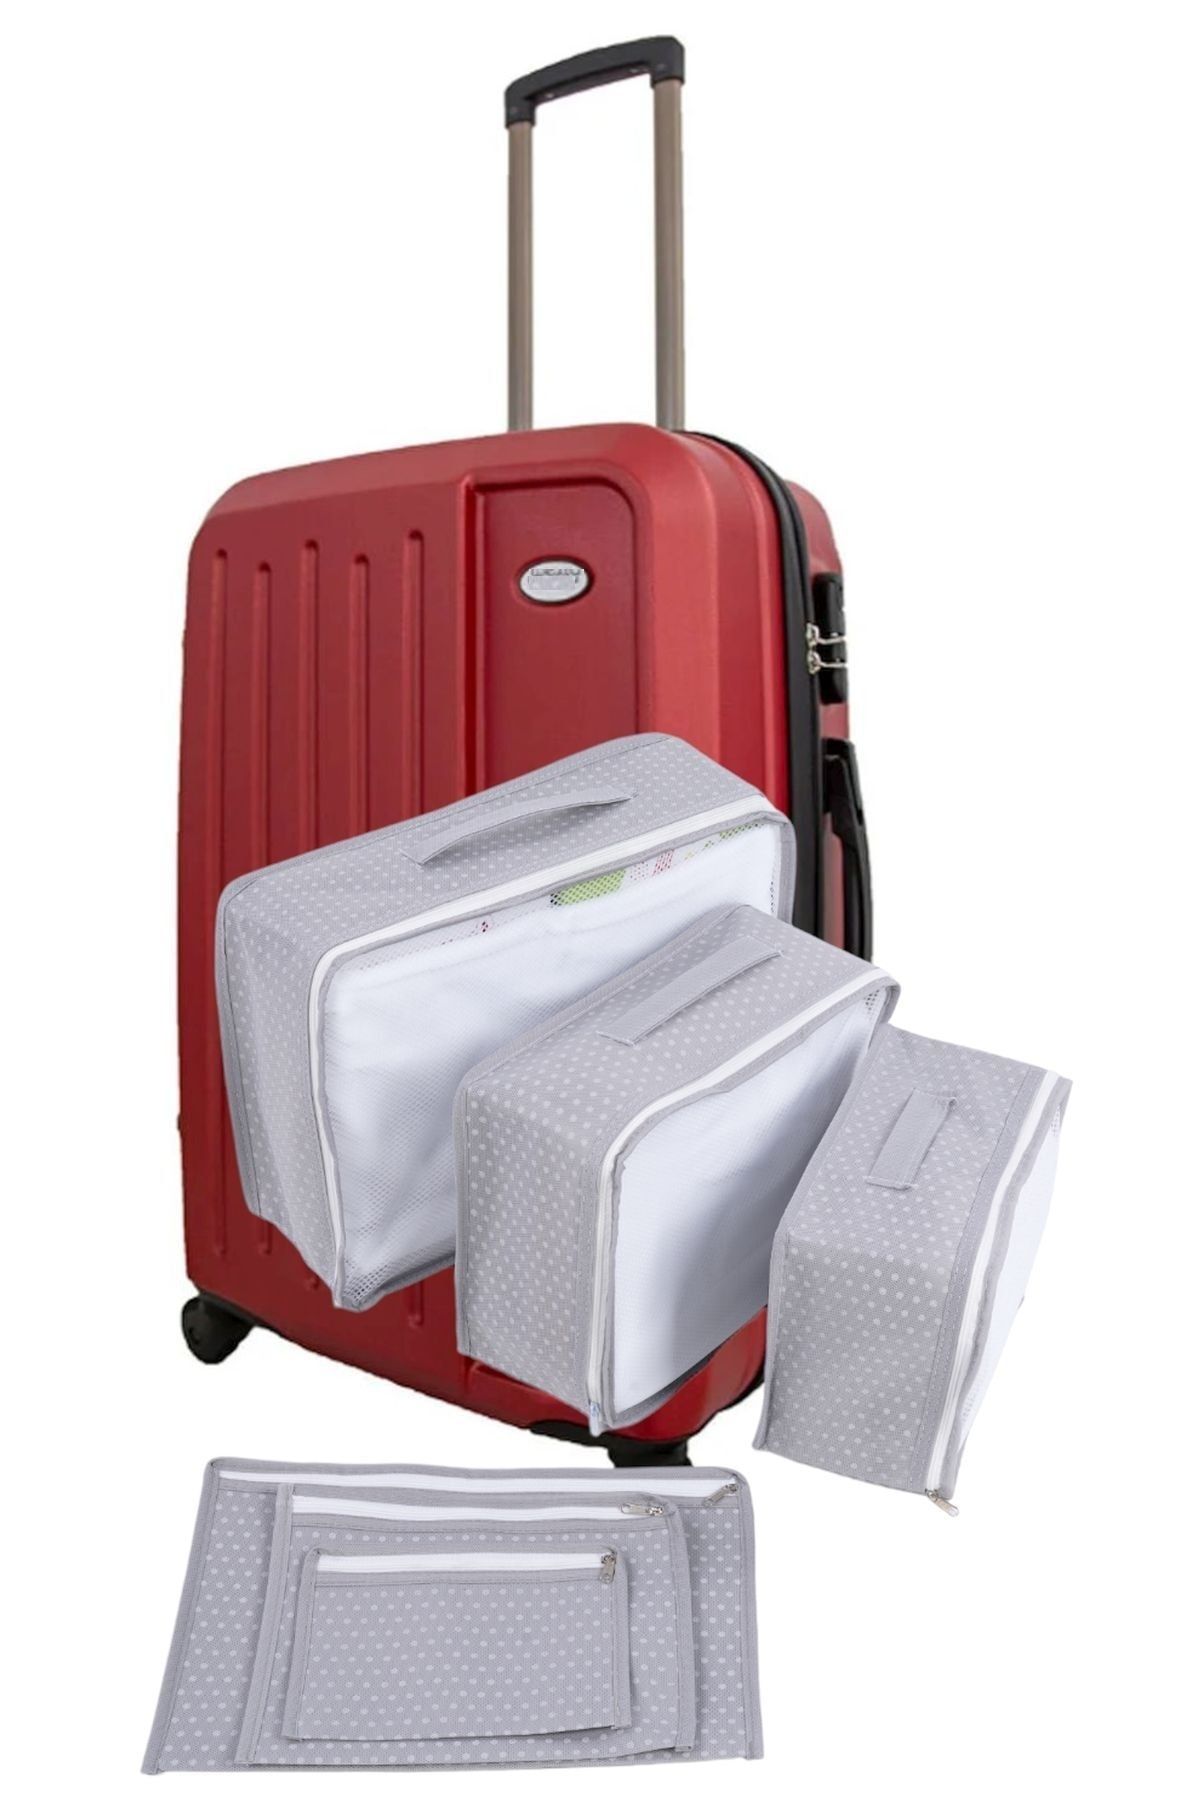 Helen's Home 6'lı Valiz Düzenleyici Fileli Set - Gri Benekli Bavul Içi Organizer Set Seyahat Hurcu Puantiyeli